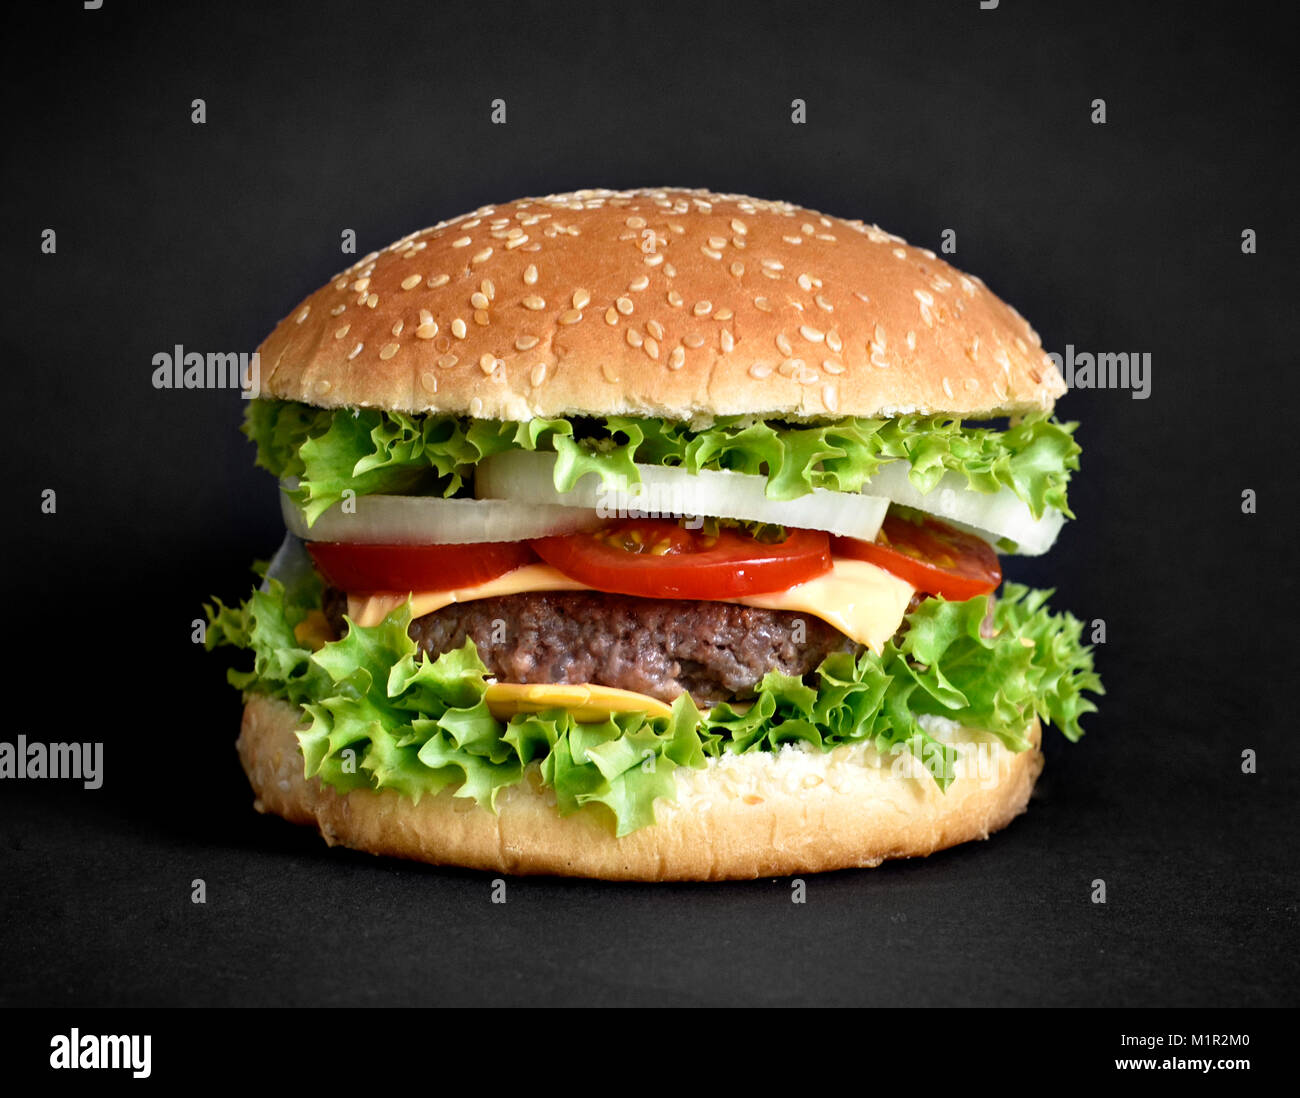 Leckere Burger, Hamburger oder Cheeseburger mit Sesam Brötchen und frische Zutaten. Auf schwarzem Hintergrund isoliert. Gourmet Burger mit frischer Salat. Stockfoto